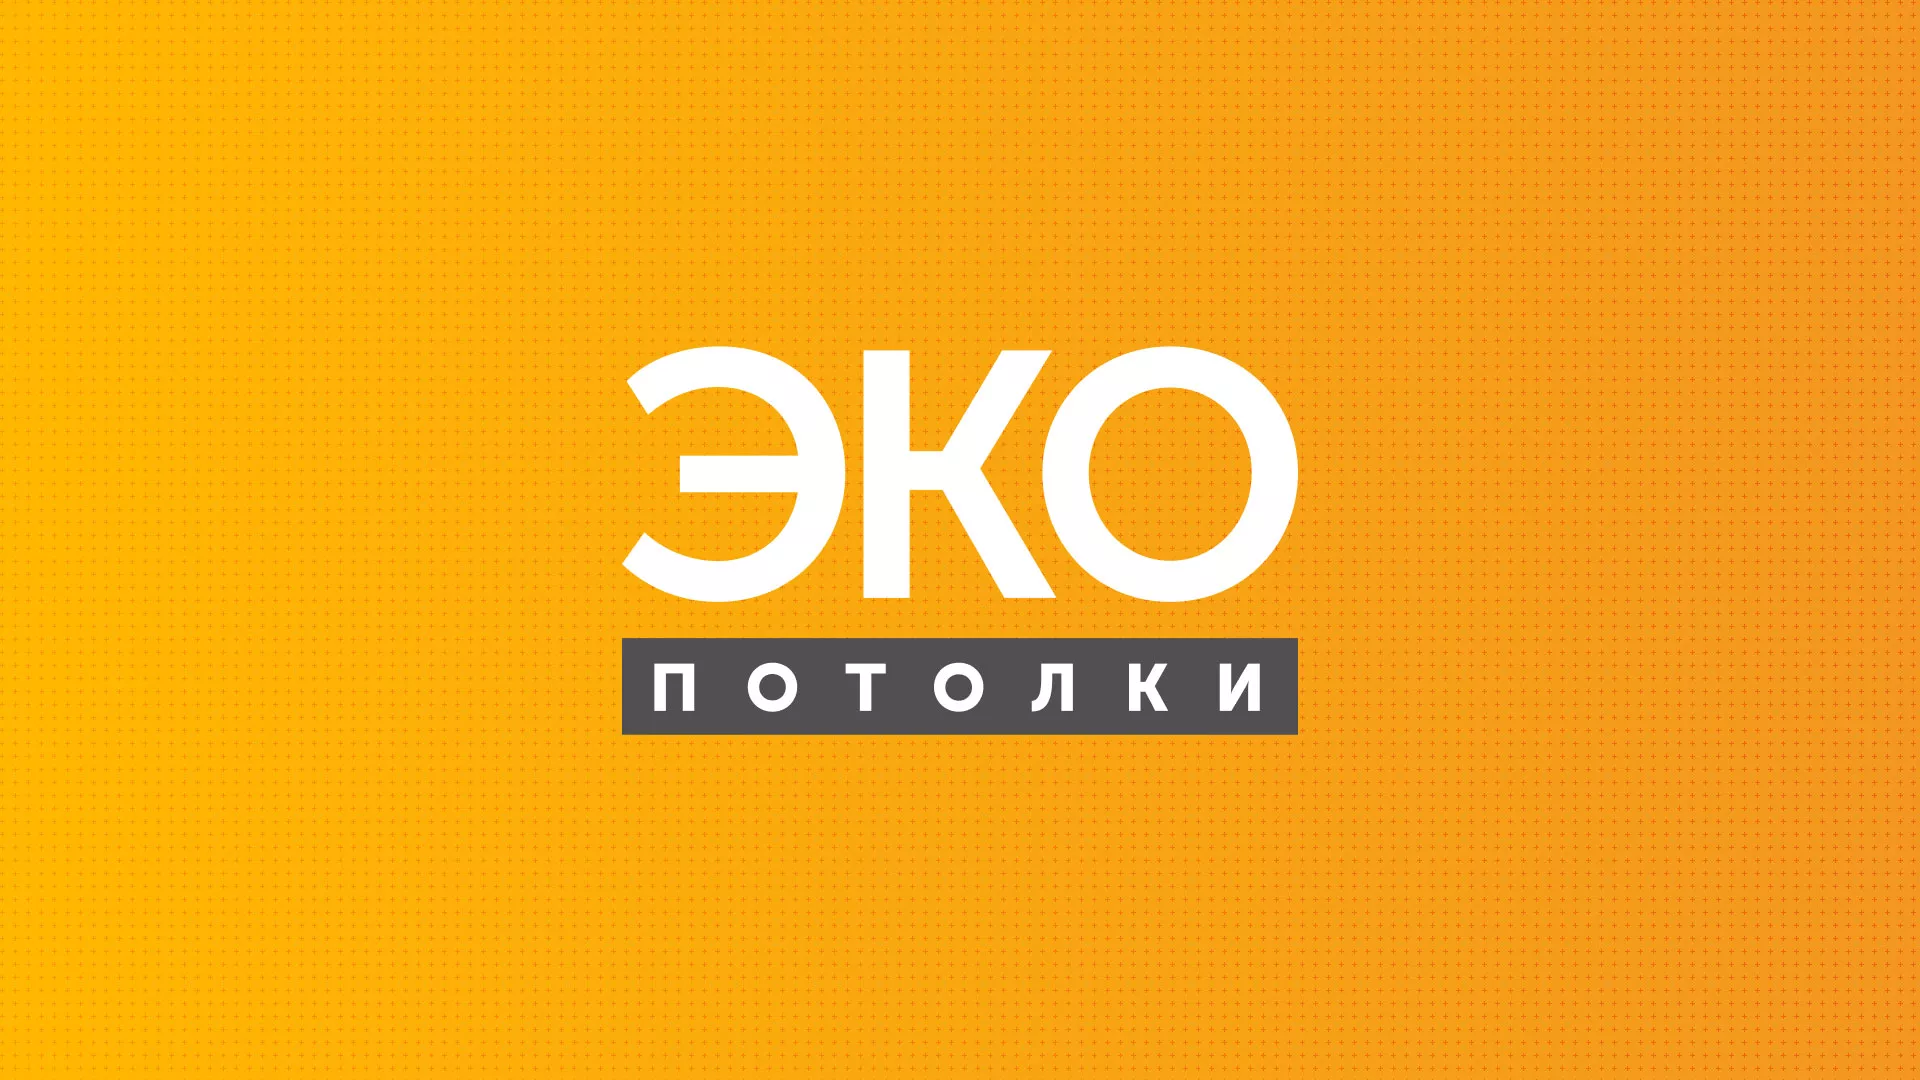 Разработка сайта по натяжным потолкам «Эко Потолки» в Железногорске-Илимском